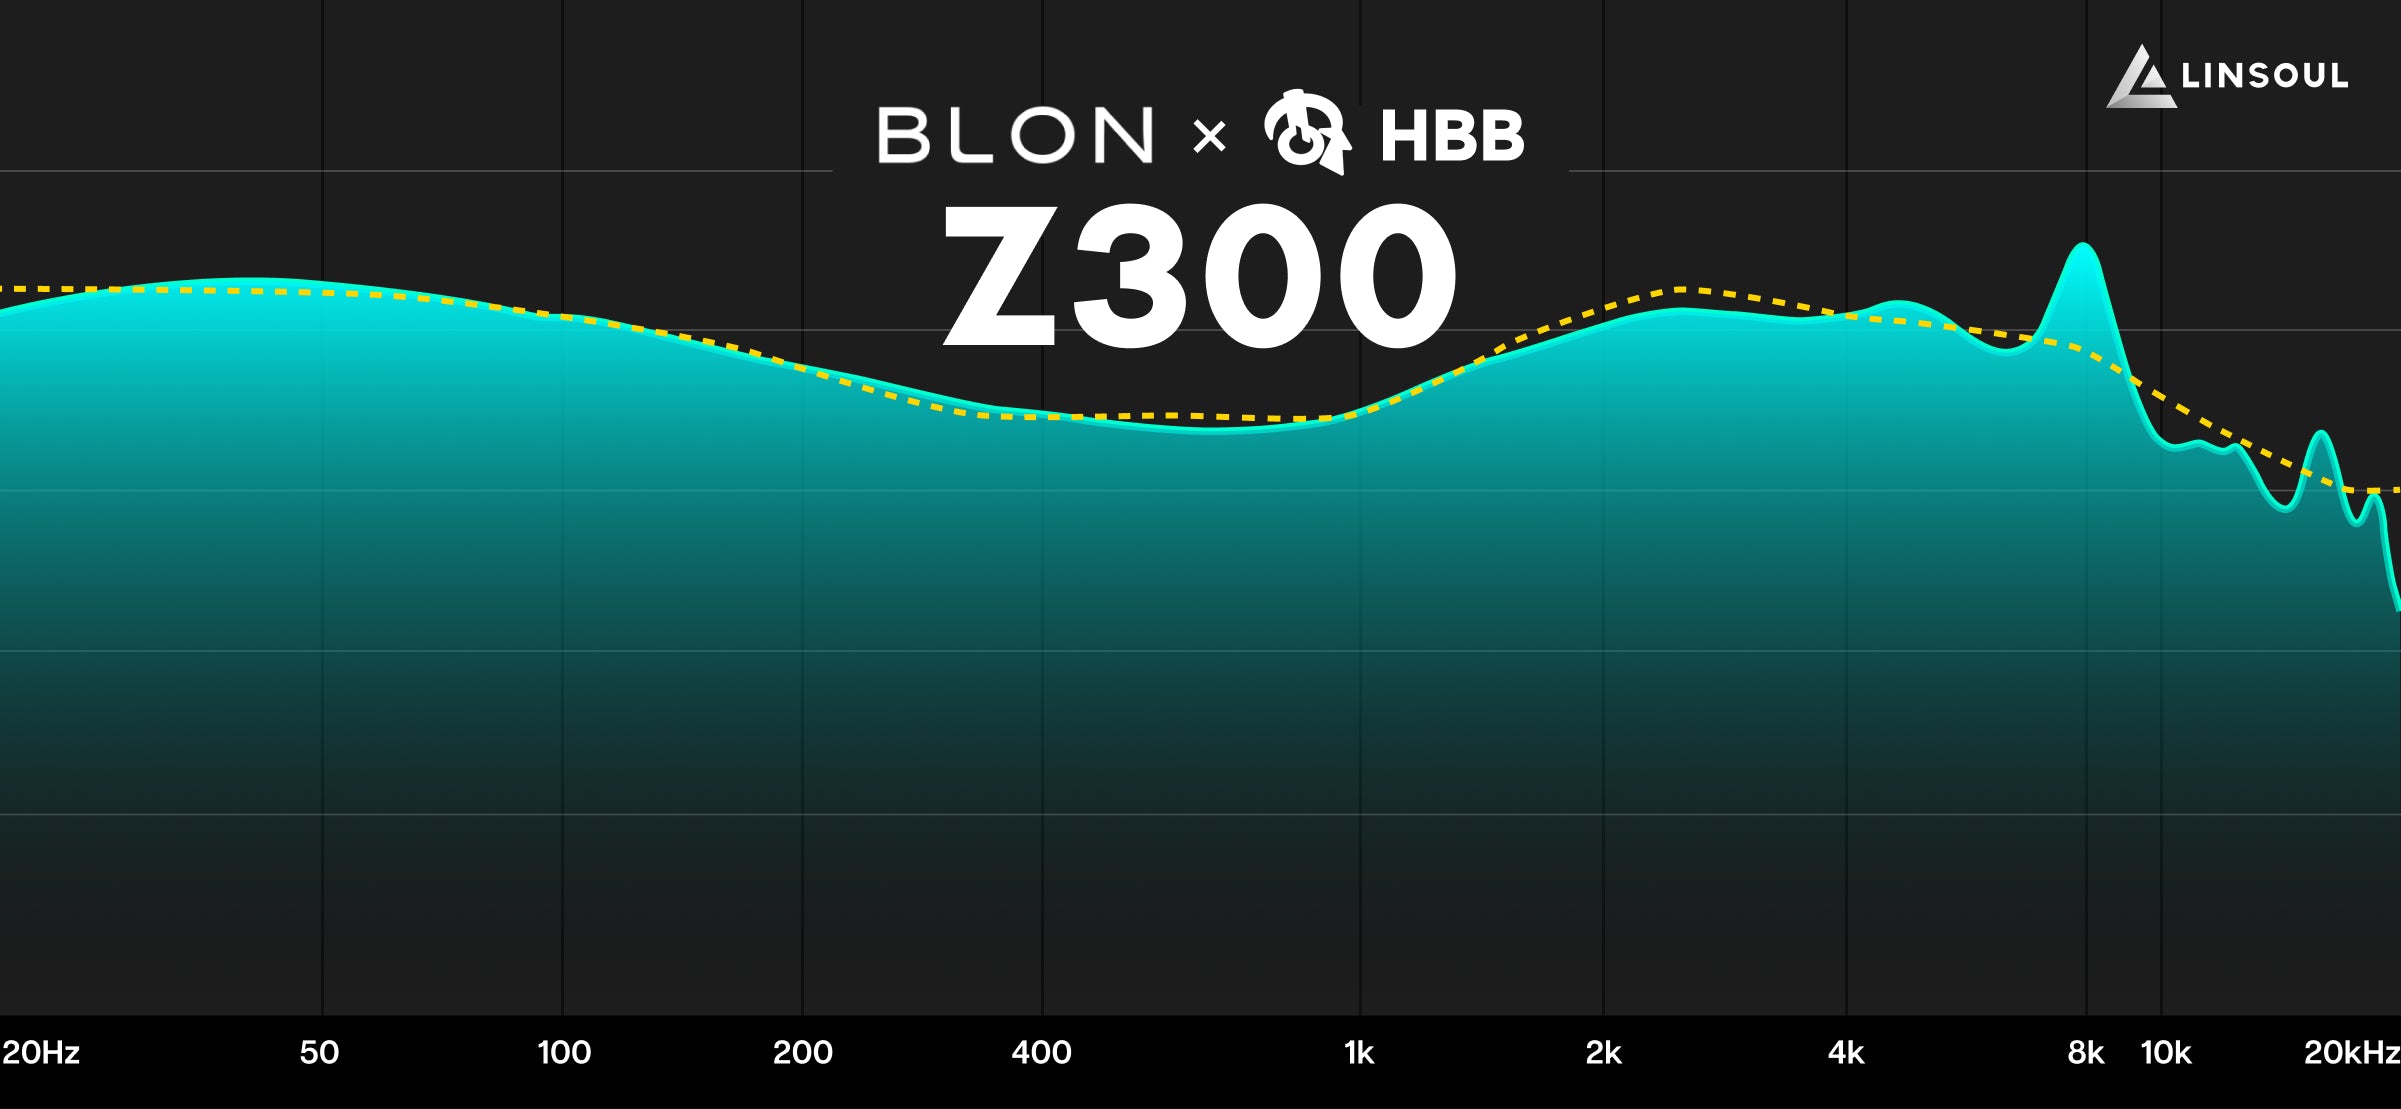 blonxhbbz300-graph_6cdfd965-c2fa-417b-a225-99c461267d50.jpg